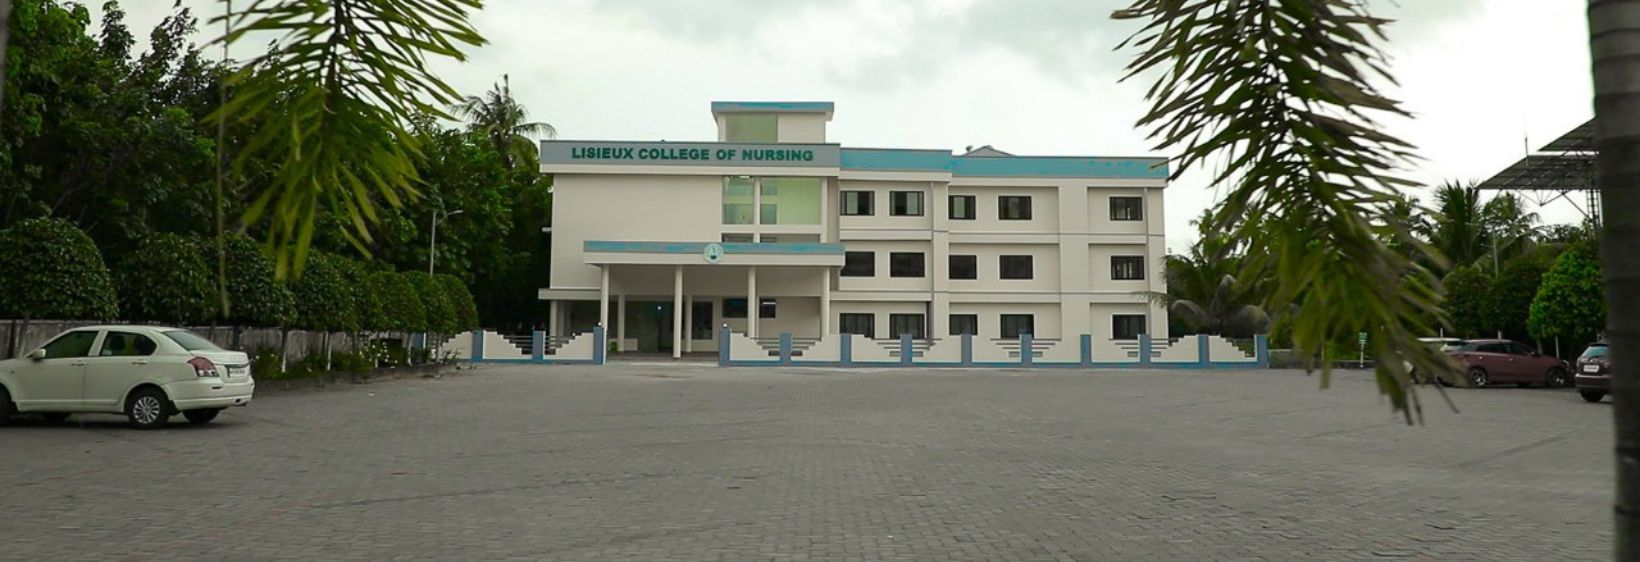 Lisieux College Of Nursing, Mookkannoor - Ernakulam